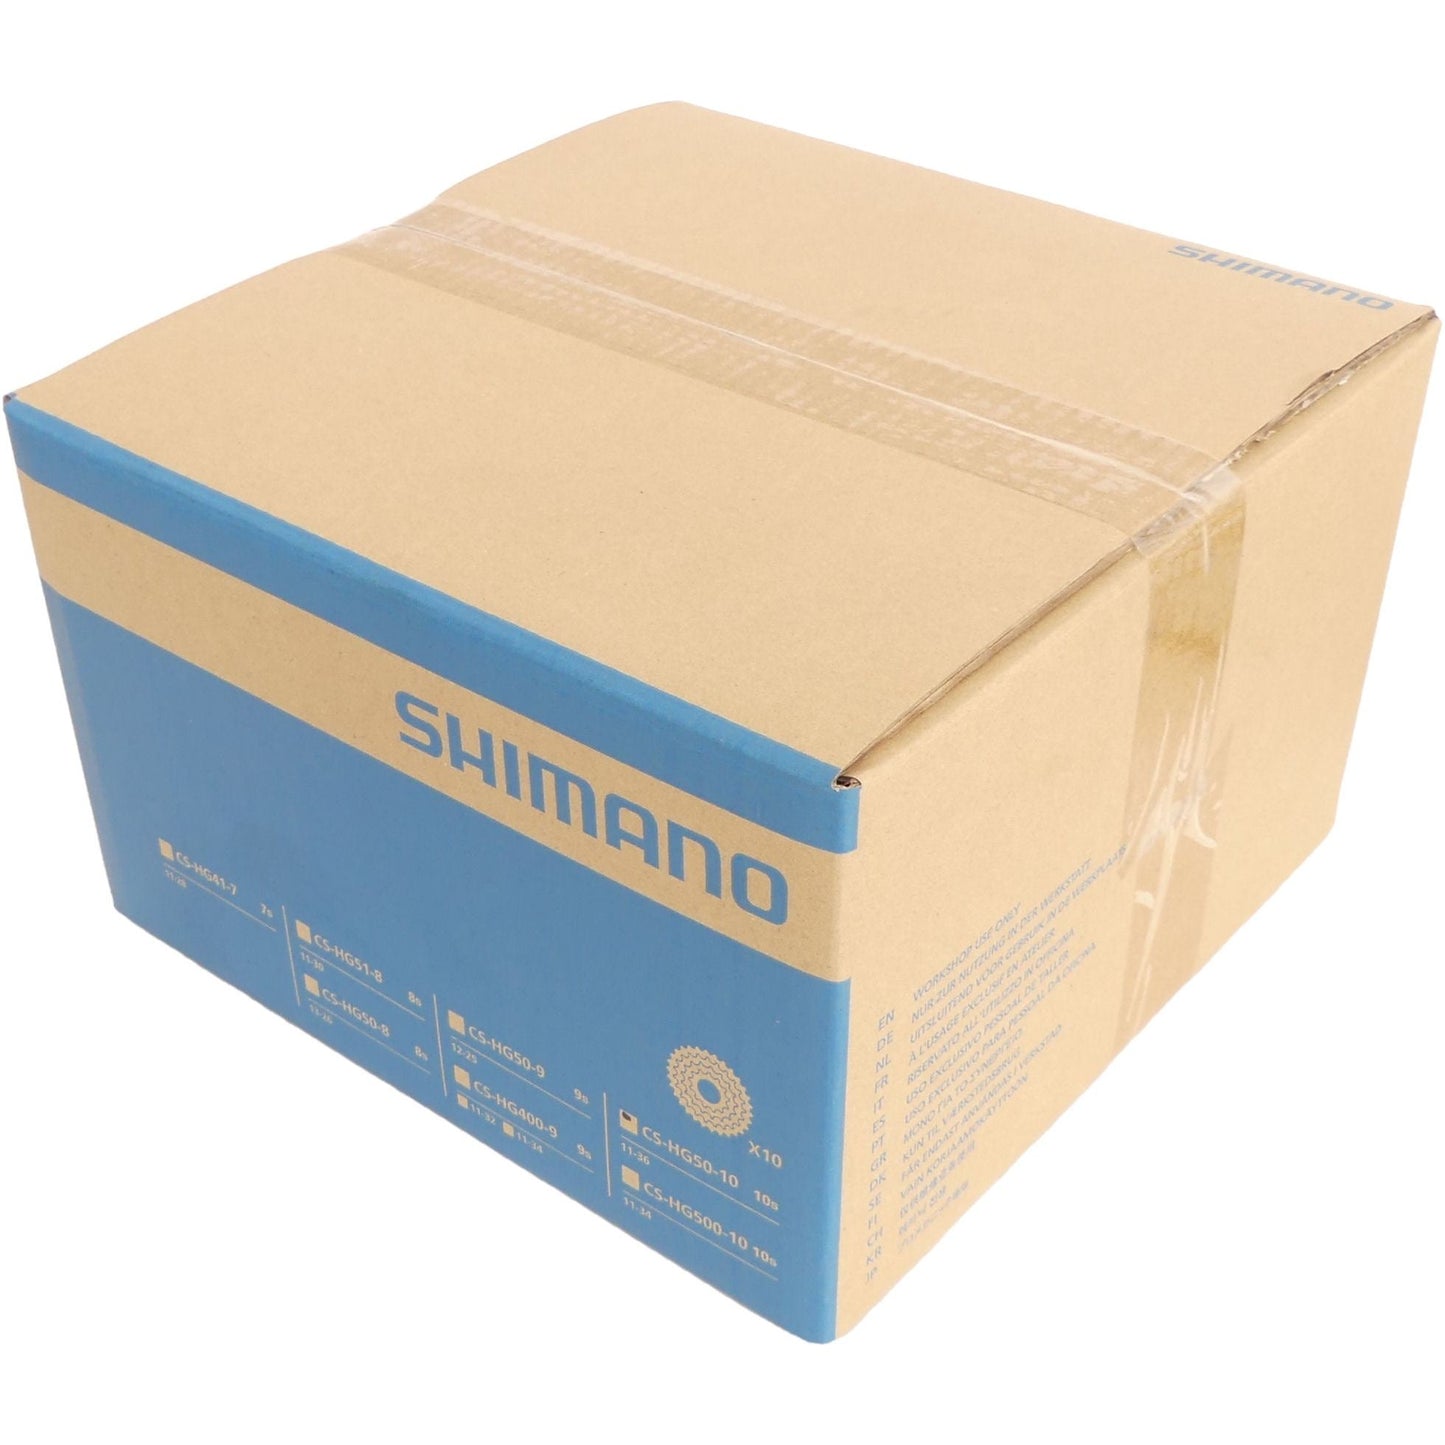 Shimano Cassette CS-HG50 10 speed 11-36T (10 stuks in werkplaatsverpakking)